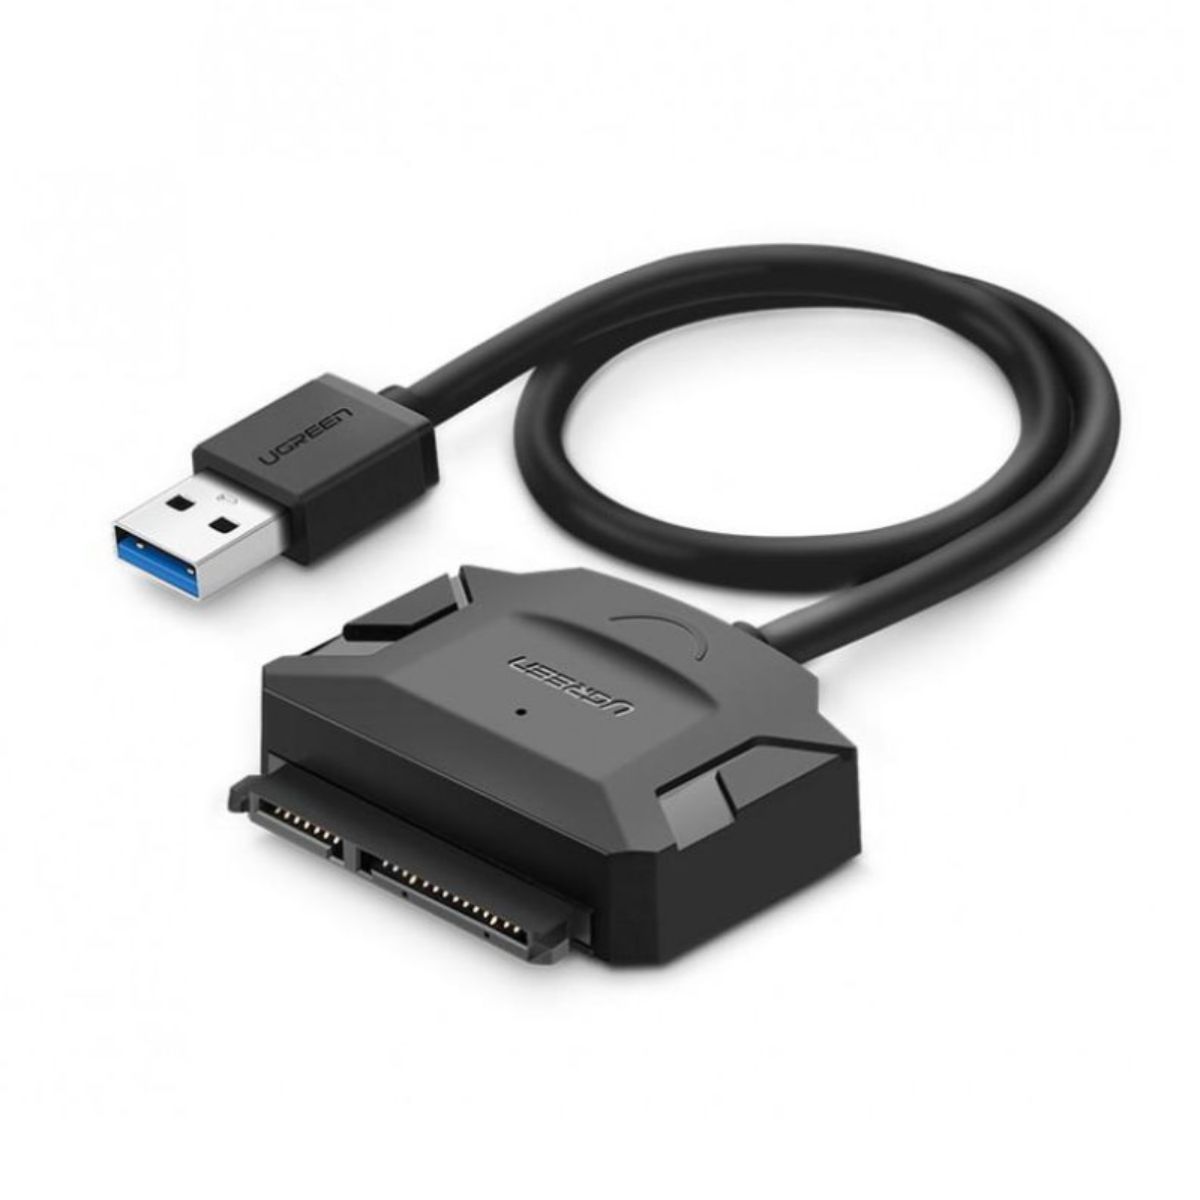 Dây chuyển đổi USB sang SATA Ugreen 20953 CR108 hỗ trợ tốc độ lên đến 5Gbps